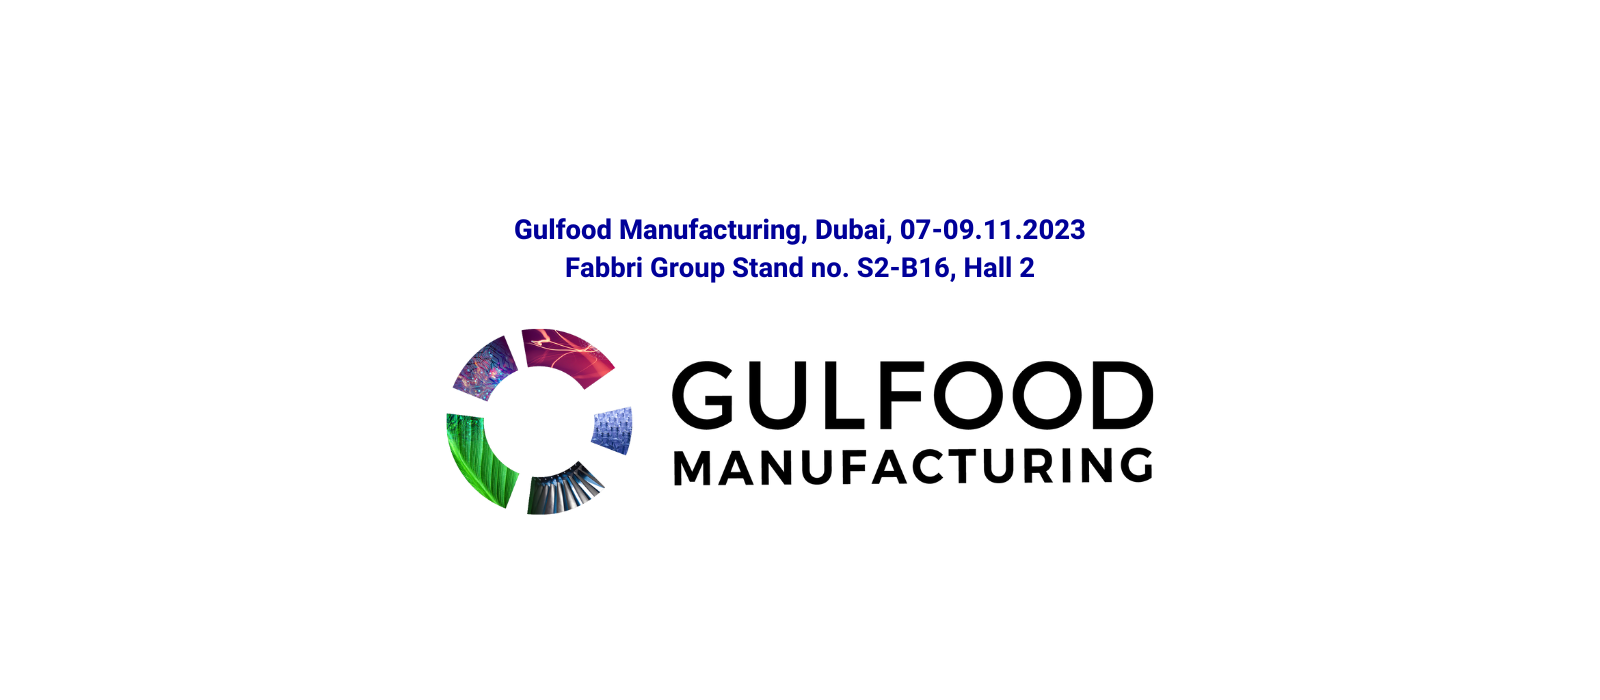 Gruppo Fabbri ancora una volta a Gulfood Manufacturing 2023